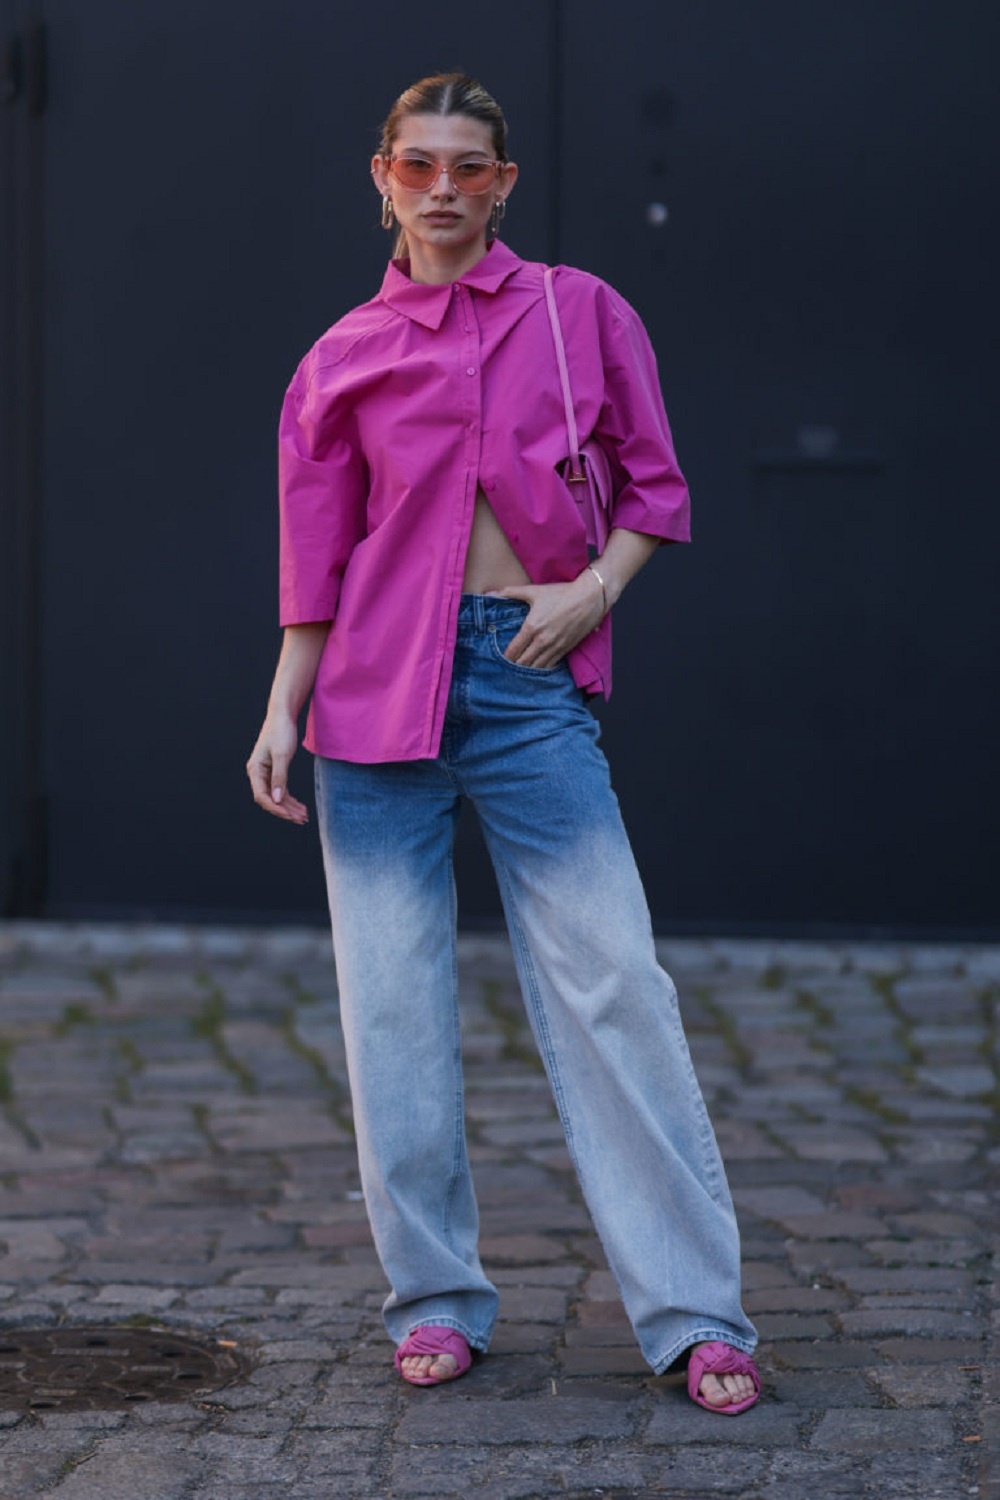 Quần jeans cạp trễ là một trong những xu hướng thời trang gây tranh cãi từ thập niên 2000